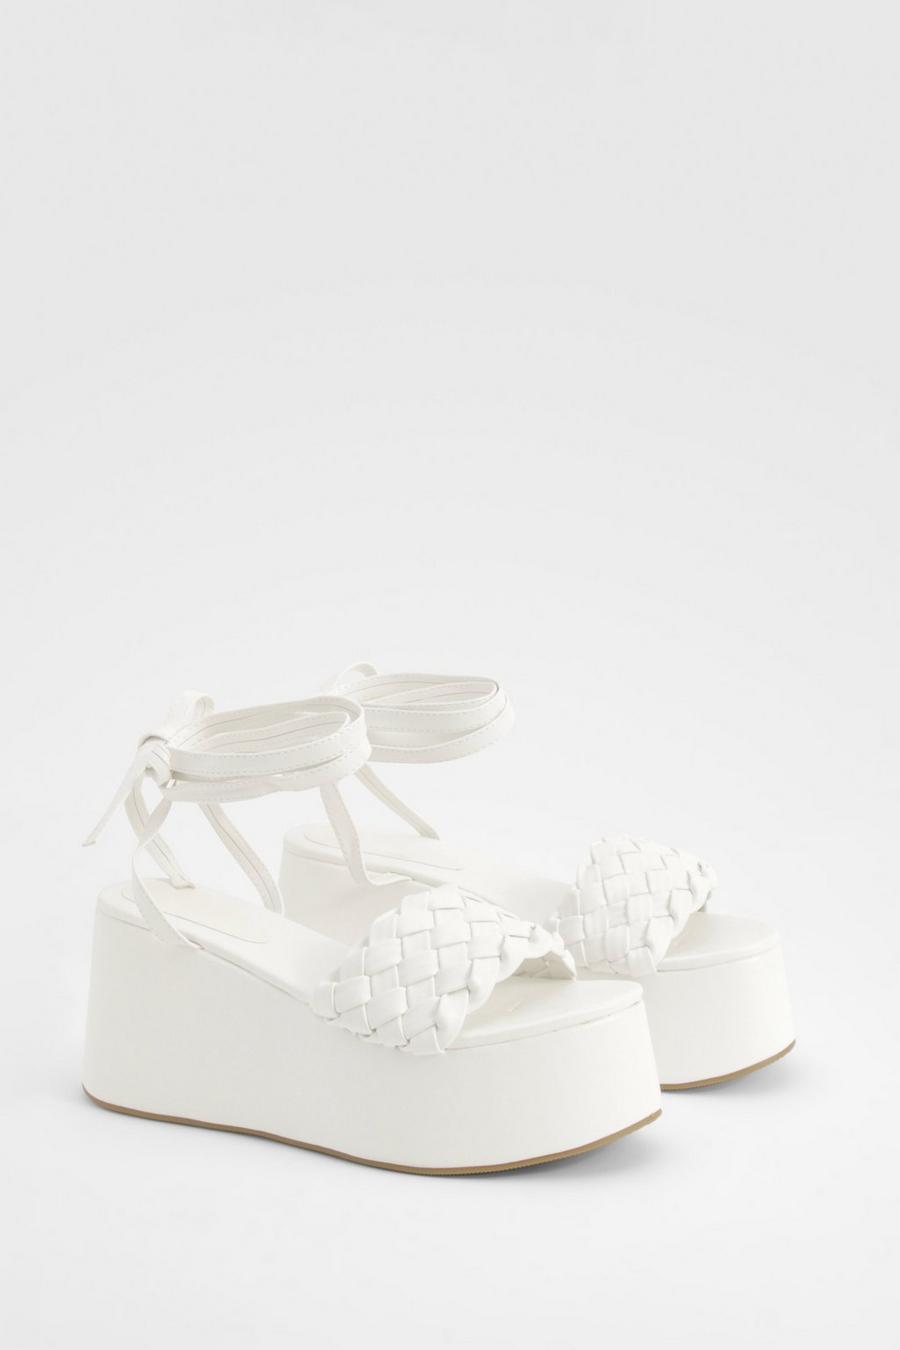 Sandali Flatform con laccetti alla caviglia, White